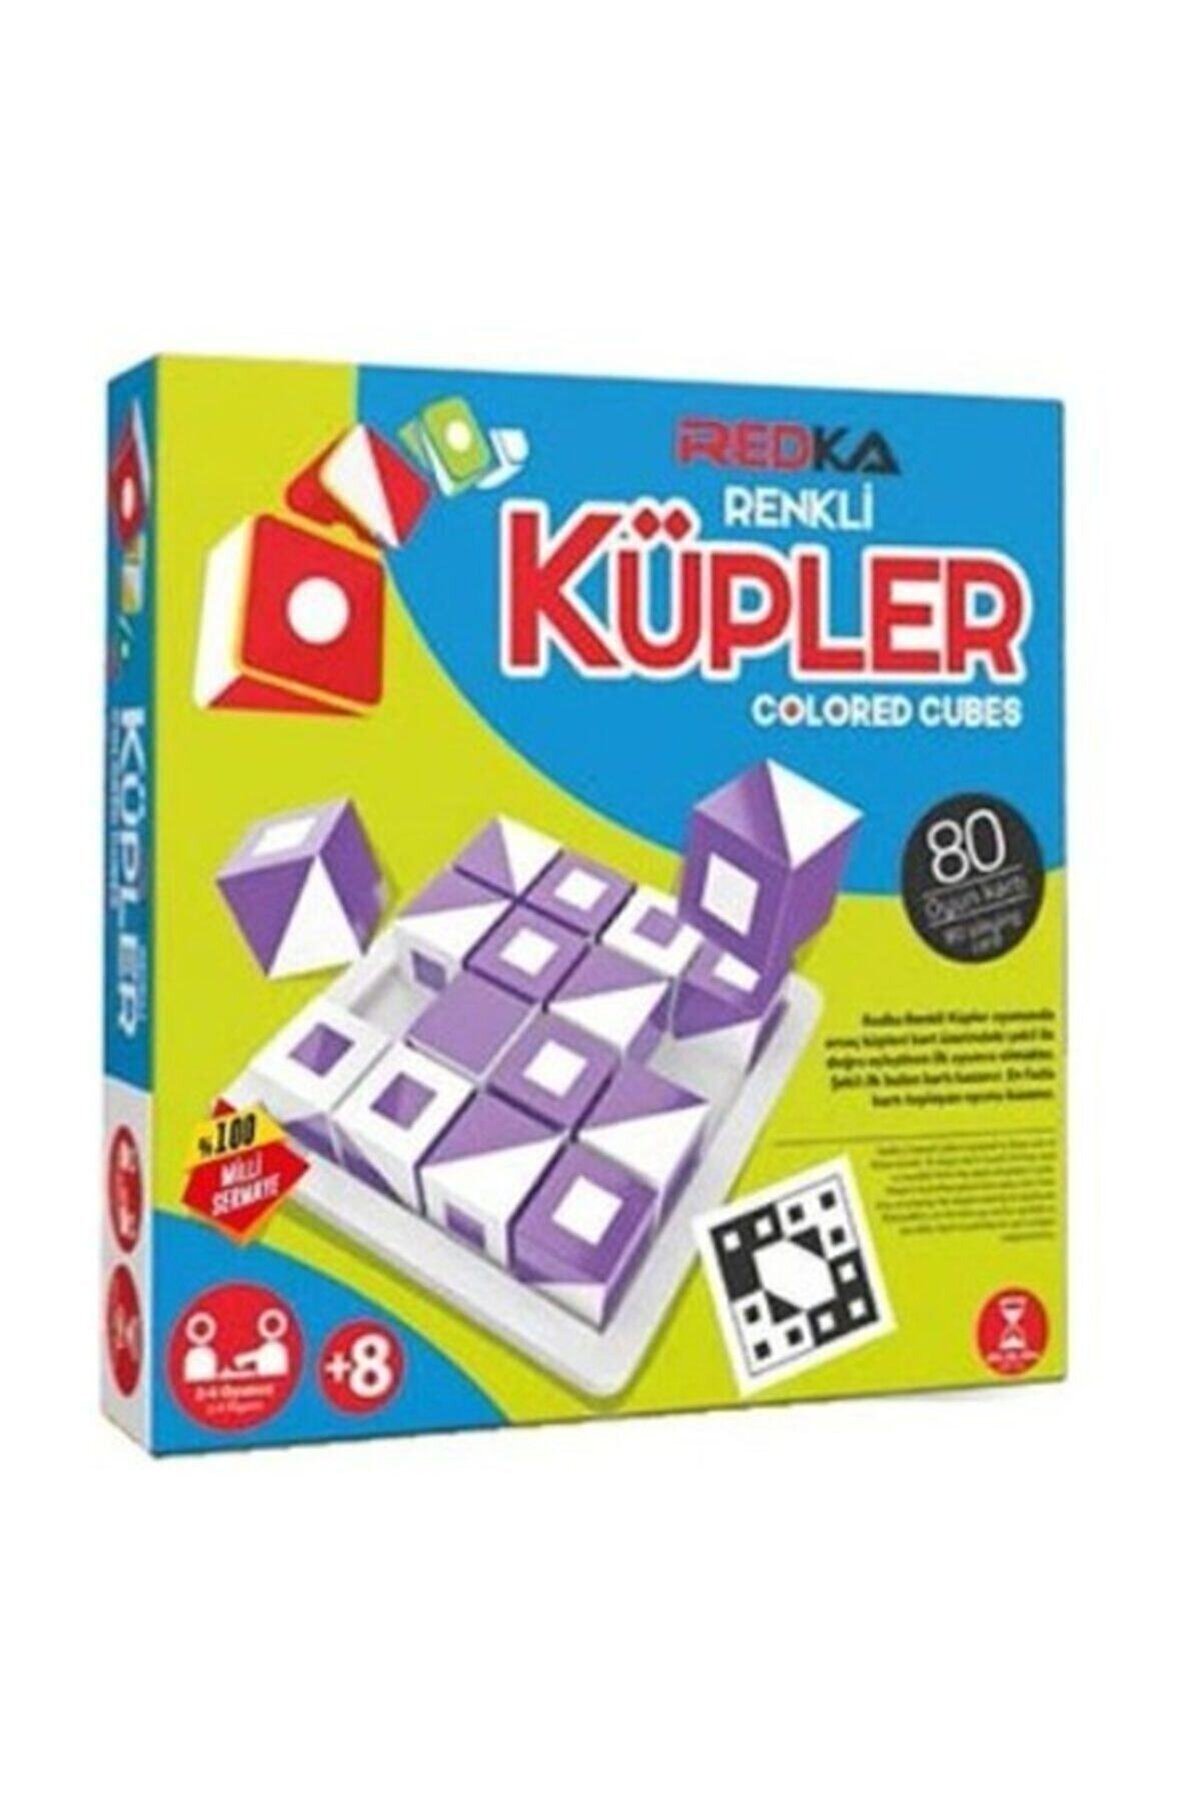 Redka/KumToys Redka Renkli Küpler Colored Cubes Akıl Zeka Mantık Ve Strateji Oyunu